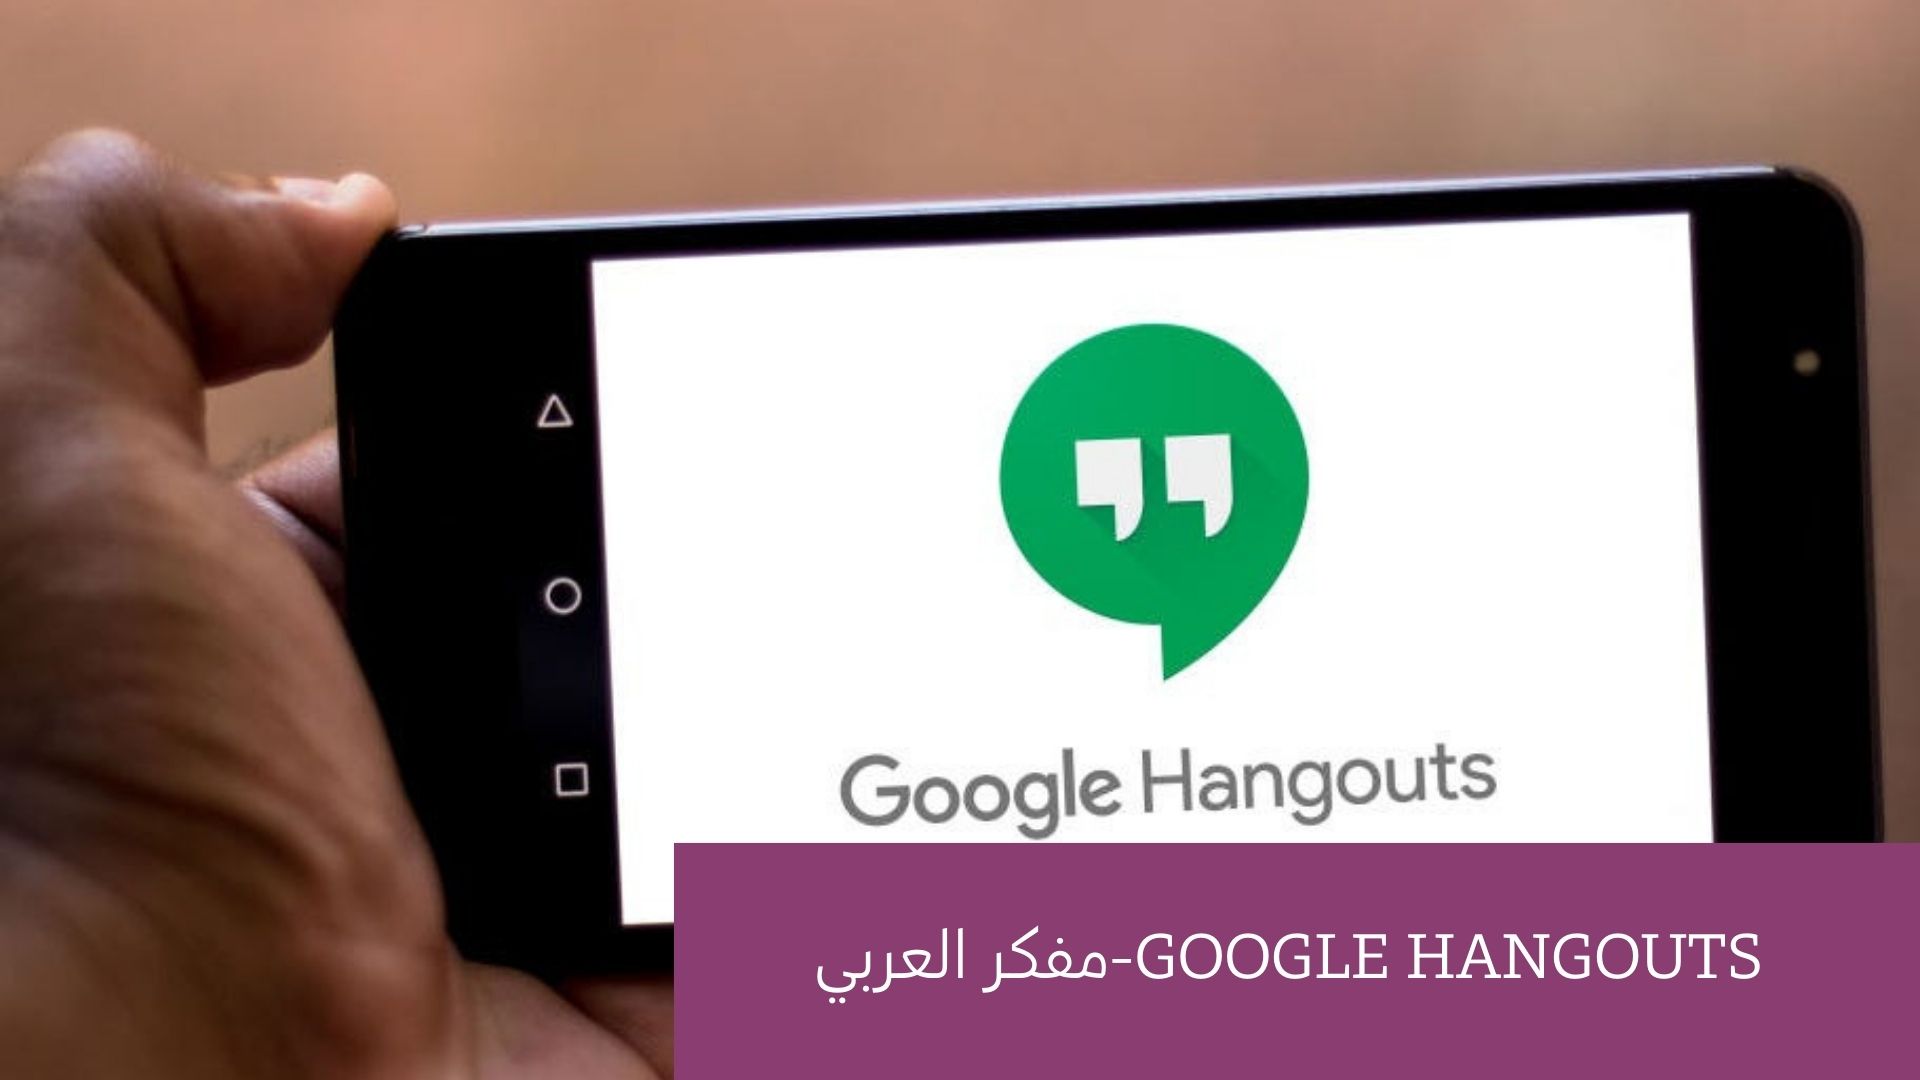 البرنامج الثالث : Google Hangouts